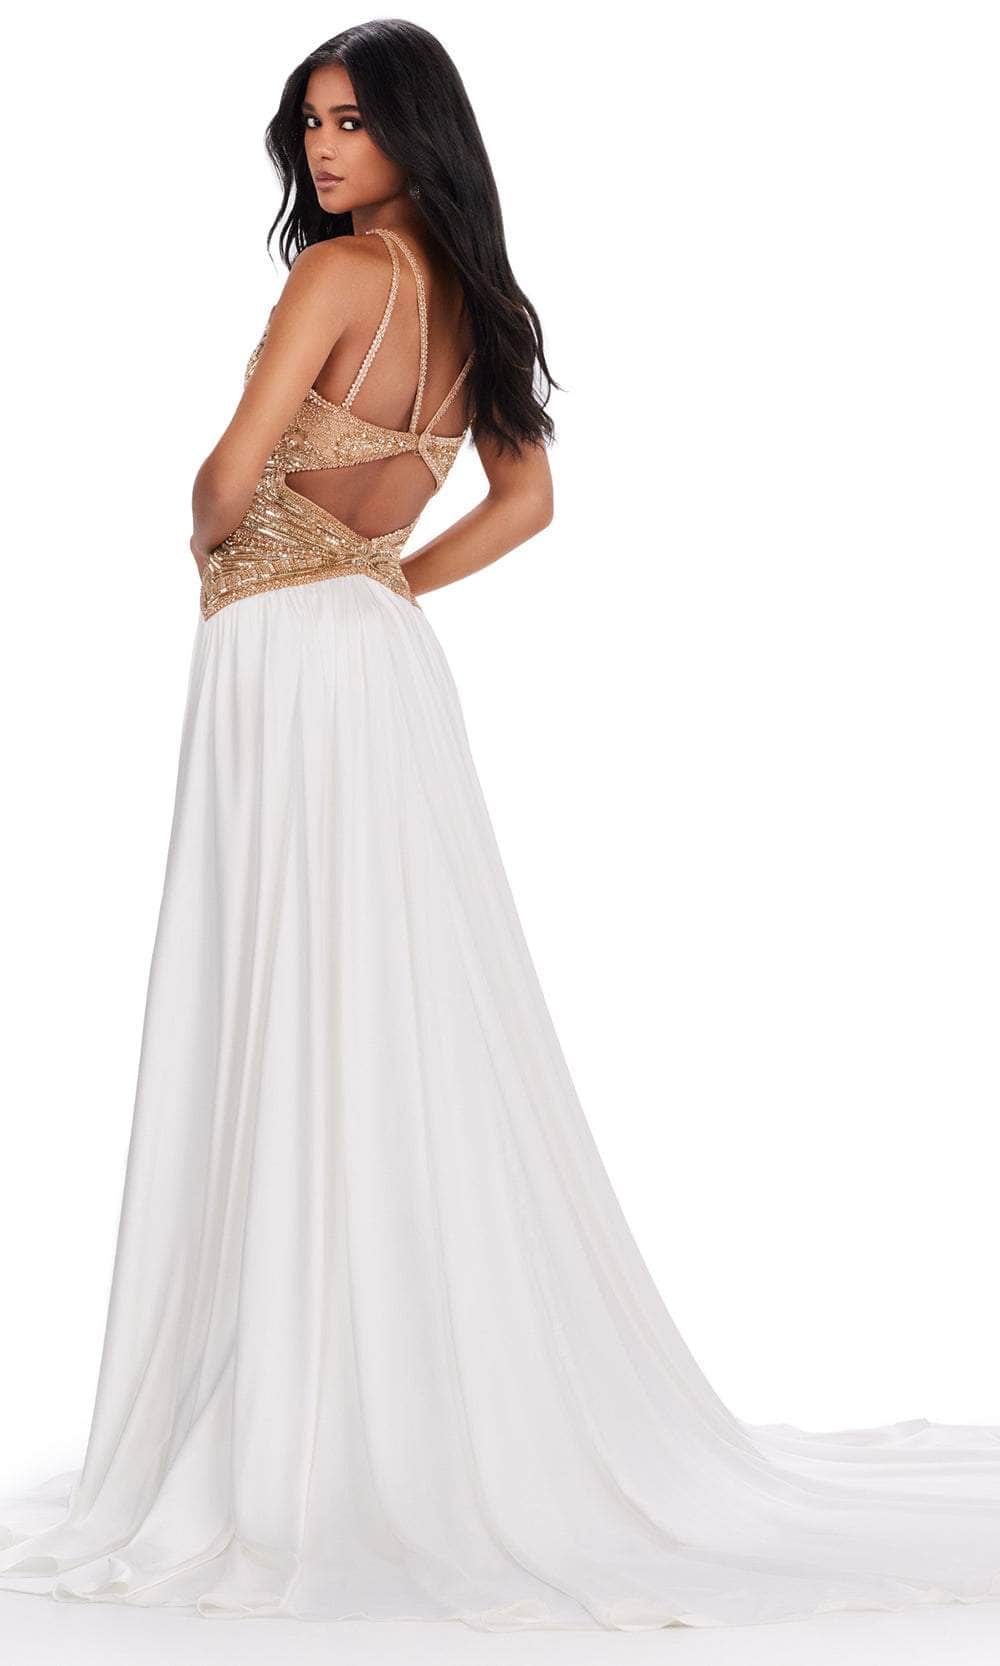 Ashley Lauren 11455 - Halter Sequin Gown Prom Dresses